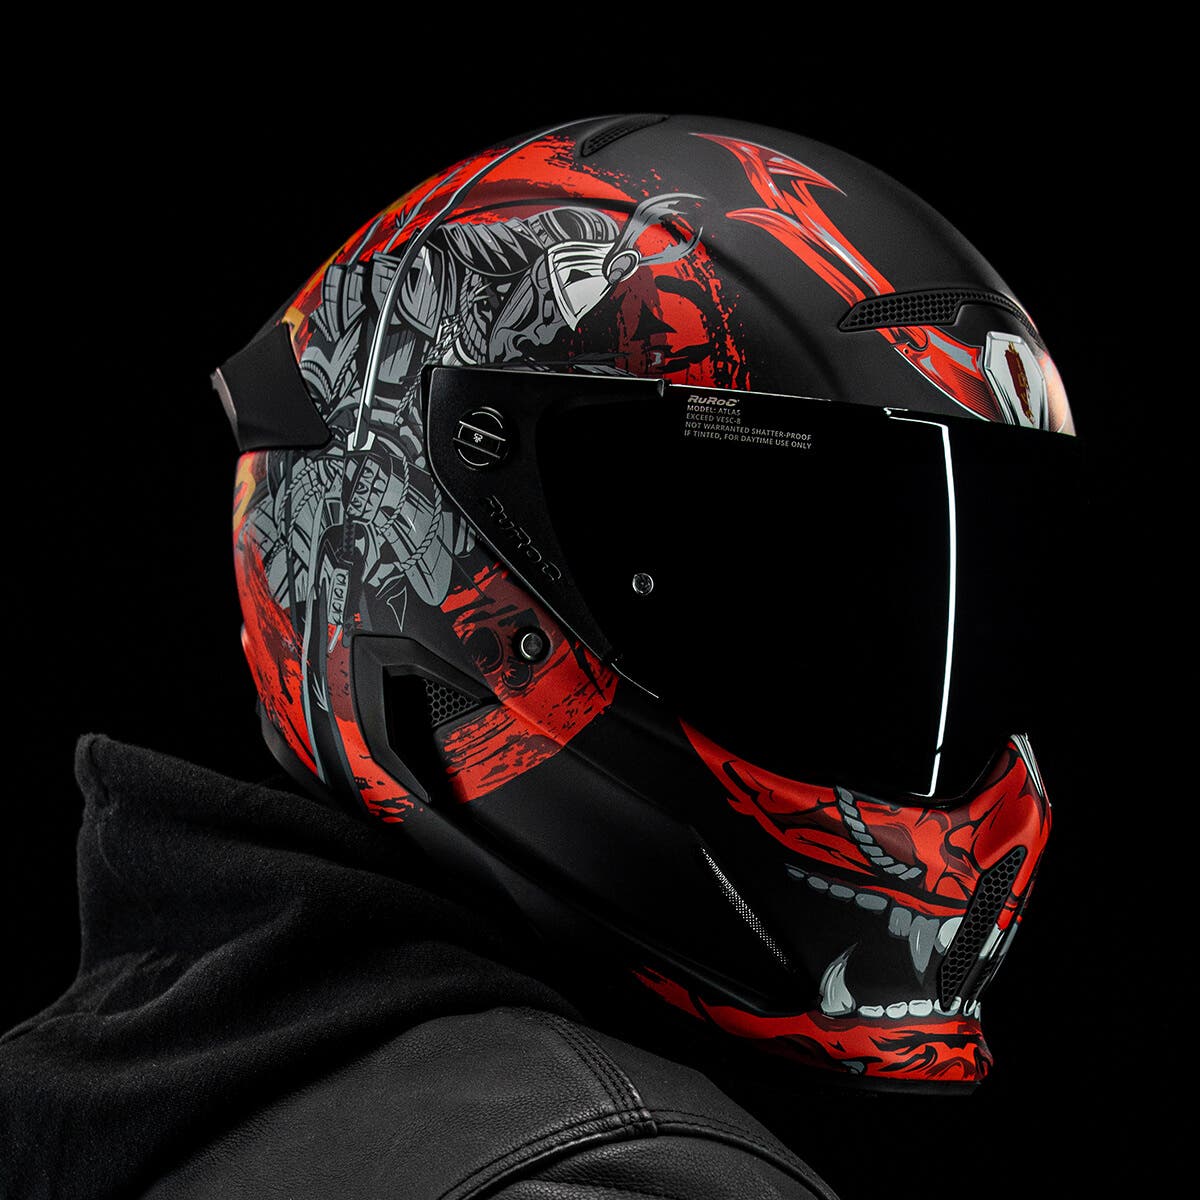 Ruroc | Atlas 2.0 Shogun | Full Face Carbon Fiber Motorcycle Helmet